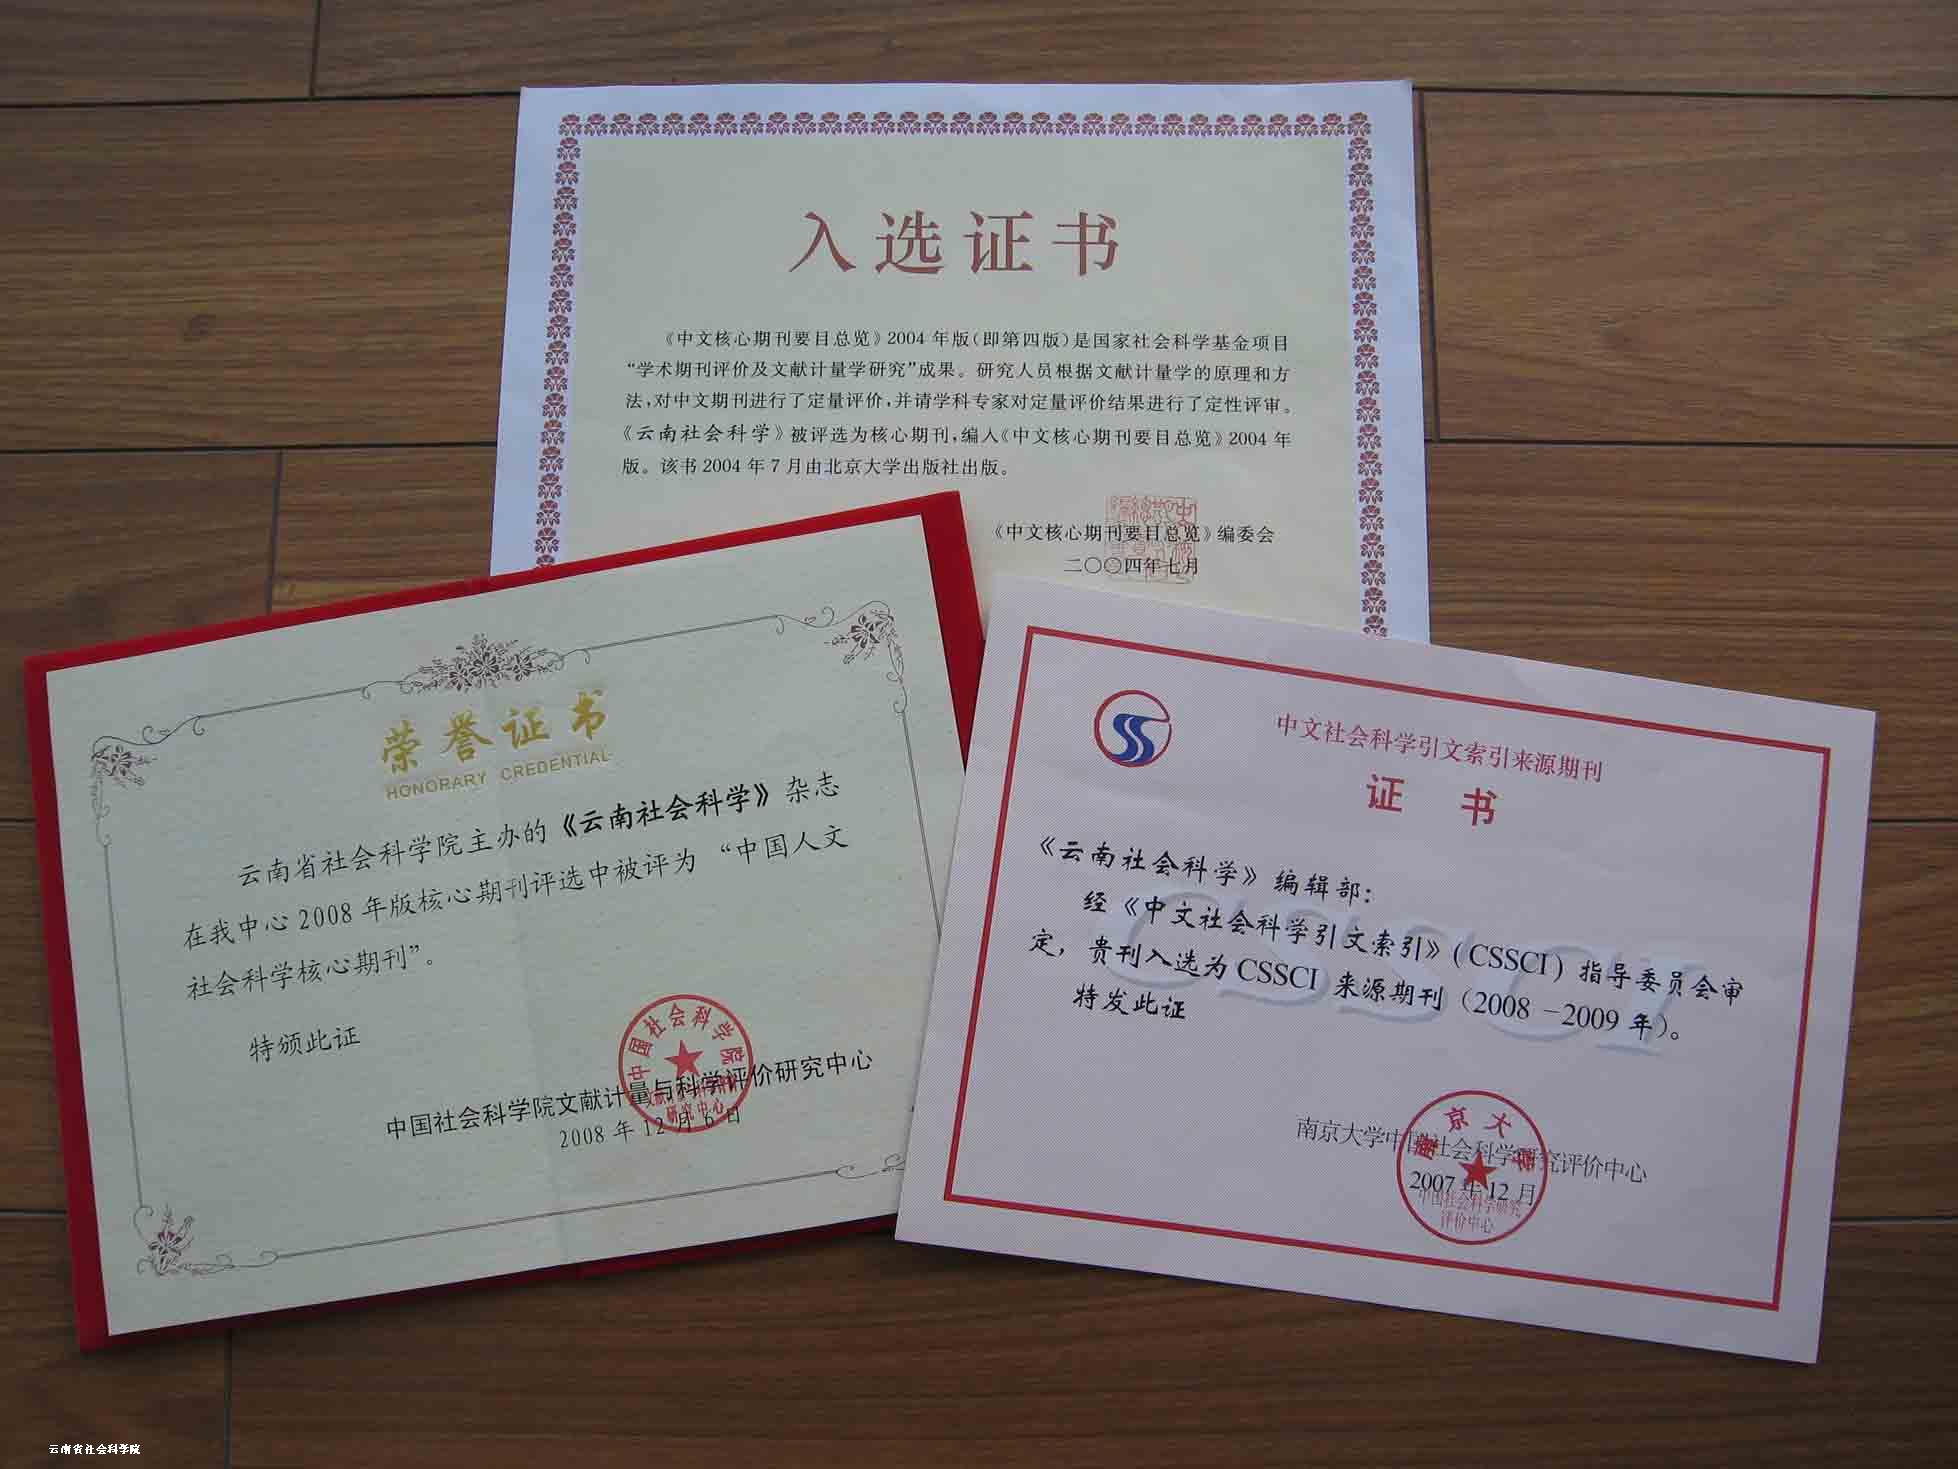 《云南社会科学》杂志进入三大学术评价体系的入选证书